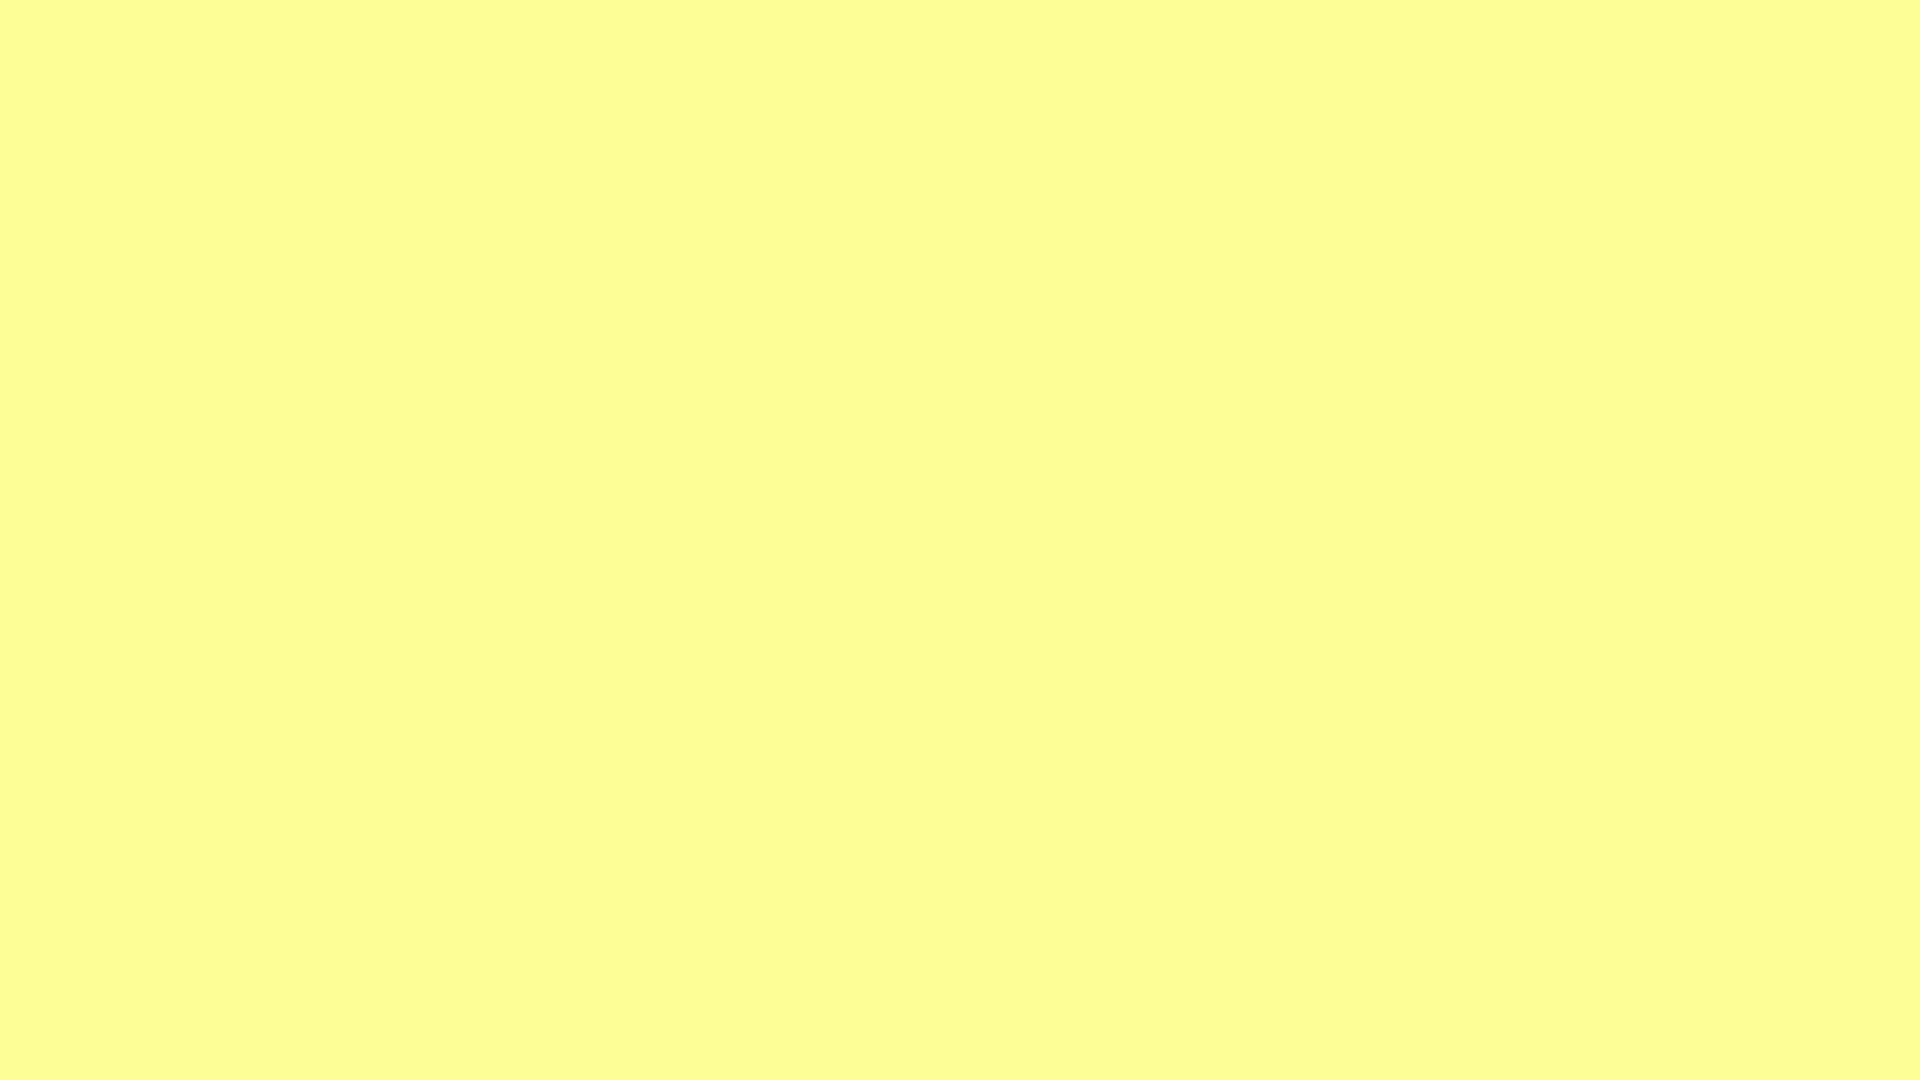 Papelde Parede Do Computador Em Amarelo Pastel Sólido. Papel de Parede